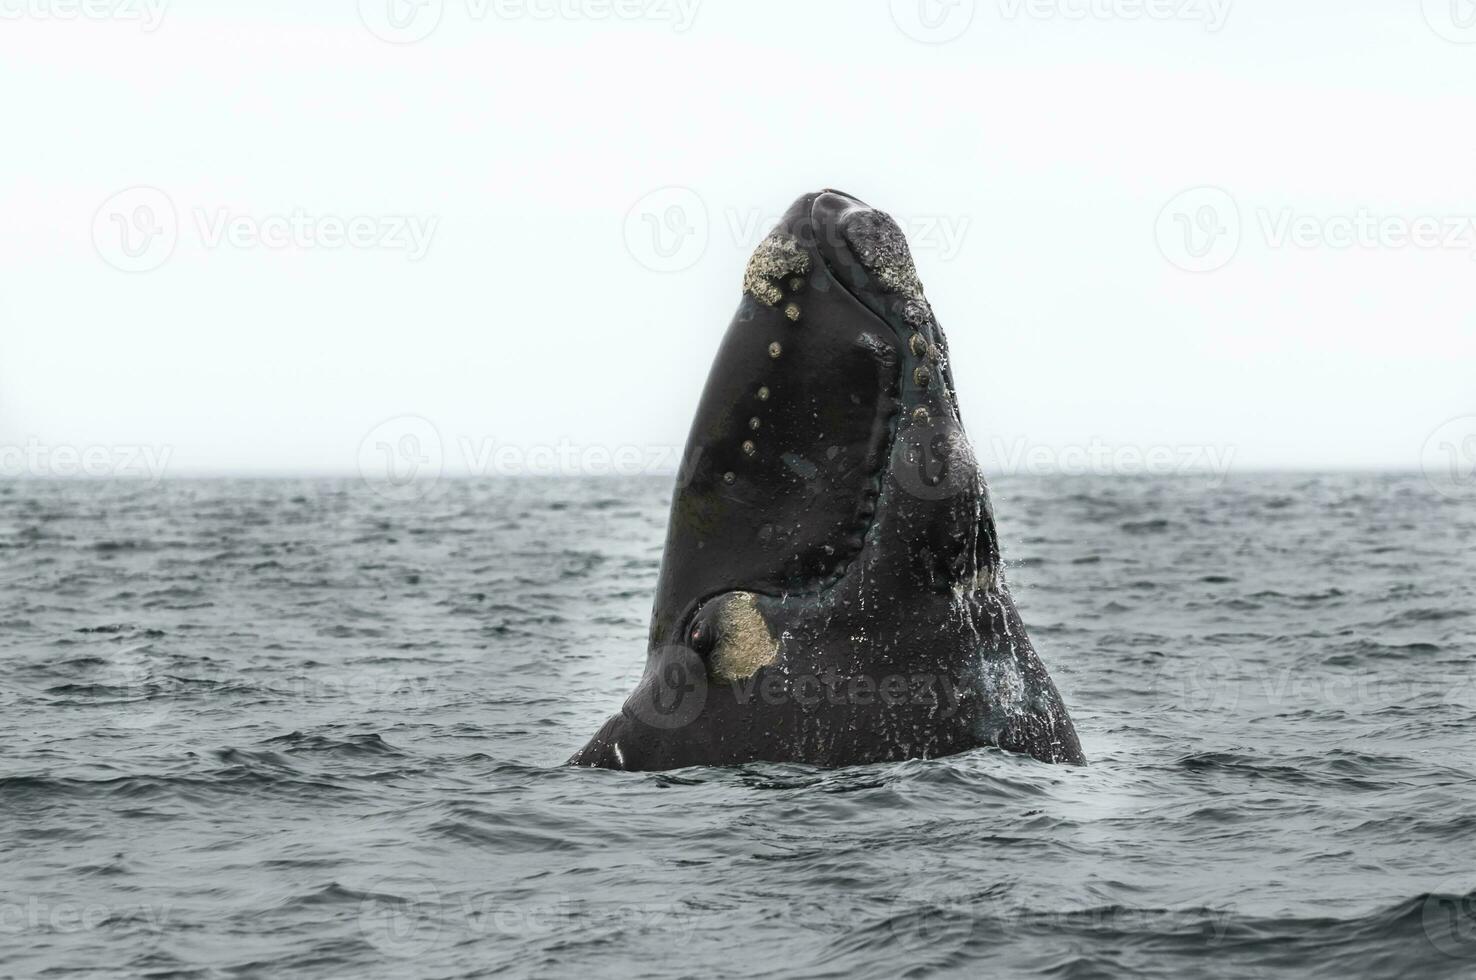 sulista certo baleia pulando , Península valdes patagônia , Argentina foto